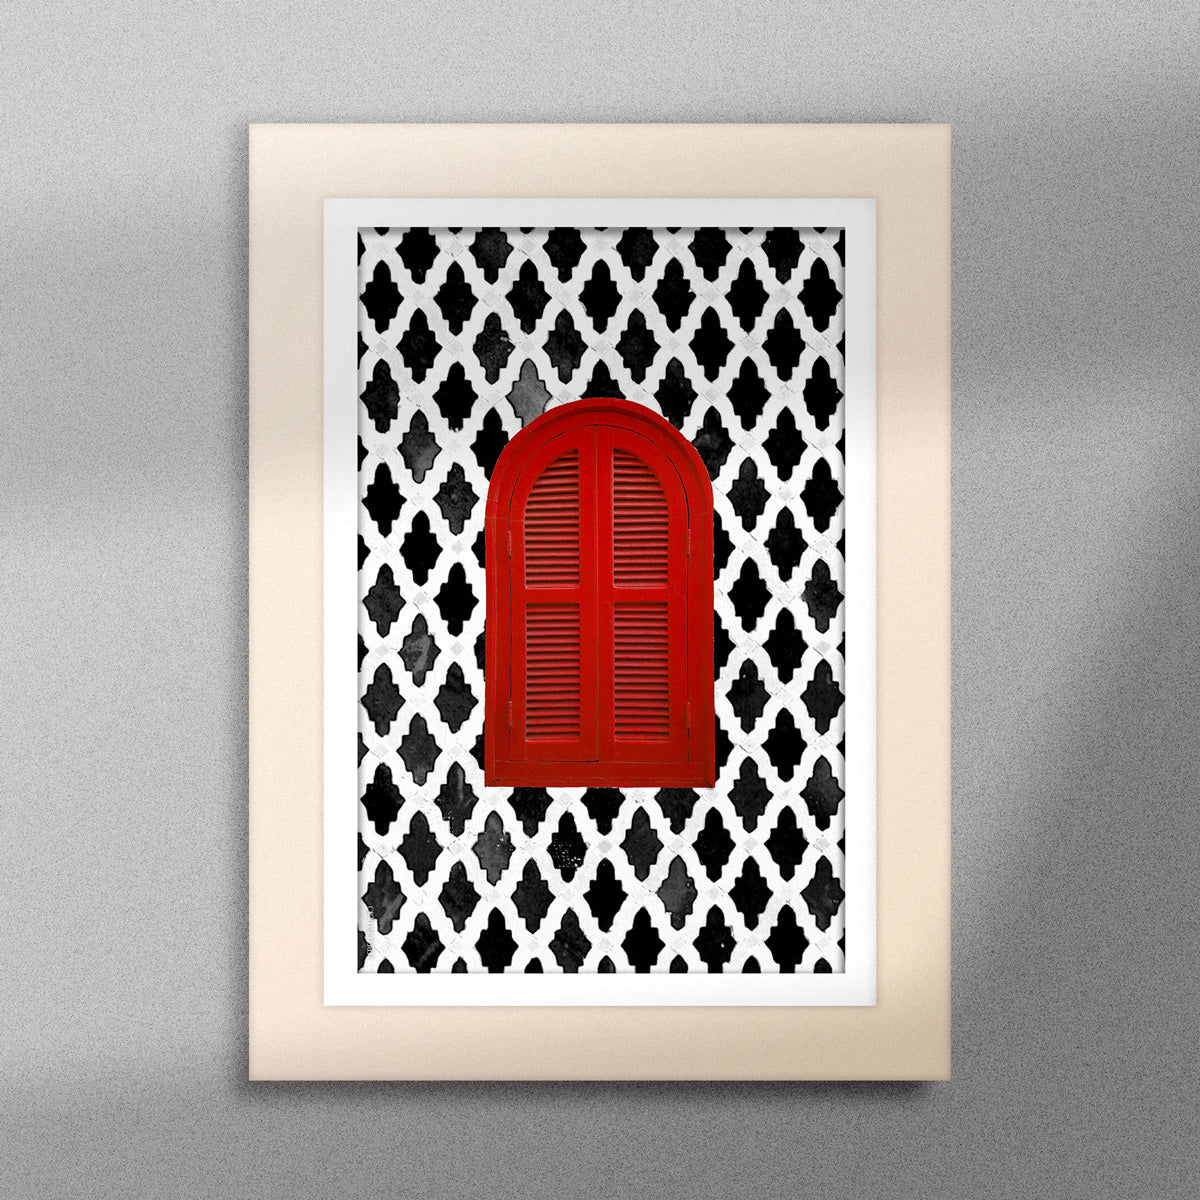 Tableau décoratif d'une fenêtre marocaine en rouge, sur un fond de zellige marocain en noir et blanc, encadré dans un cadre en bois - Format A5